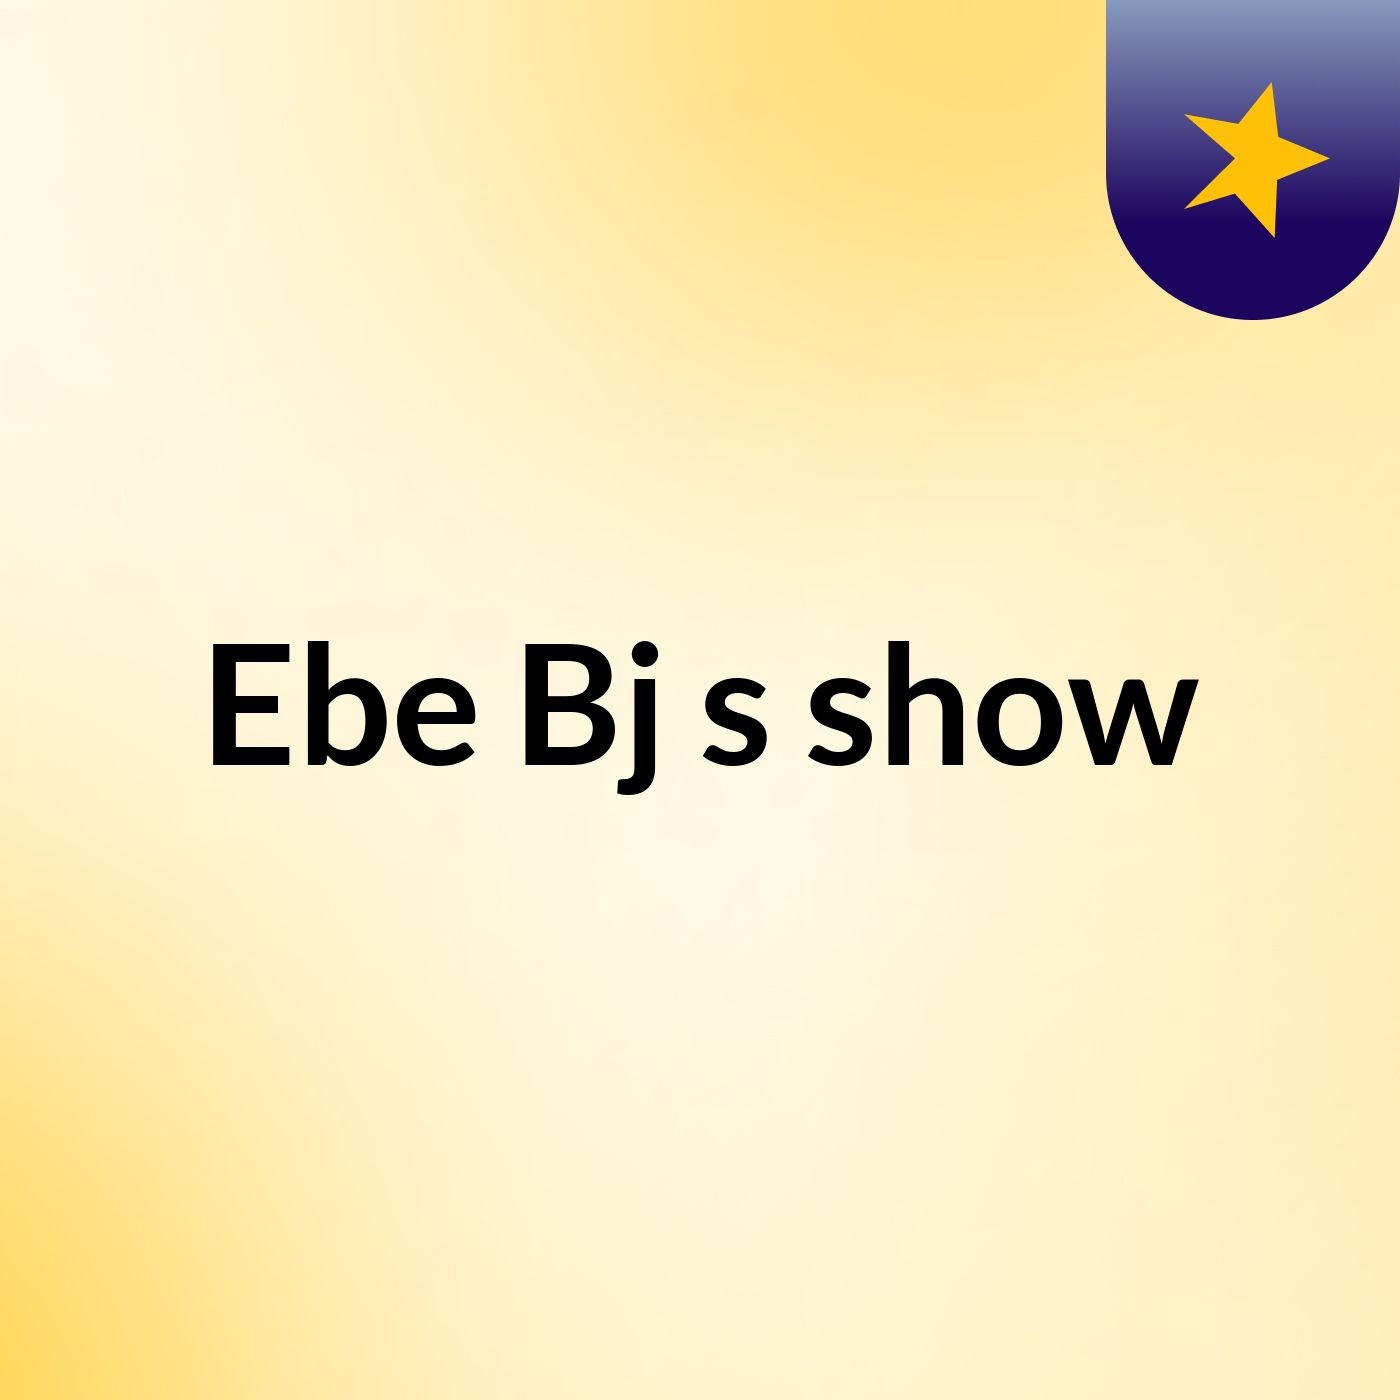 Ebe Bj's show